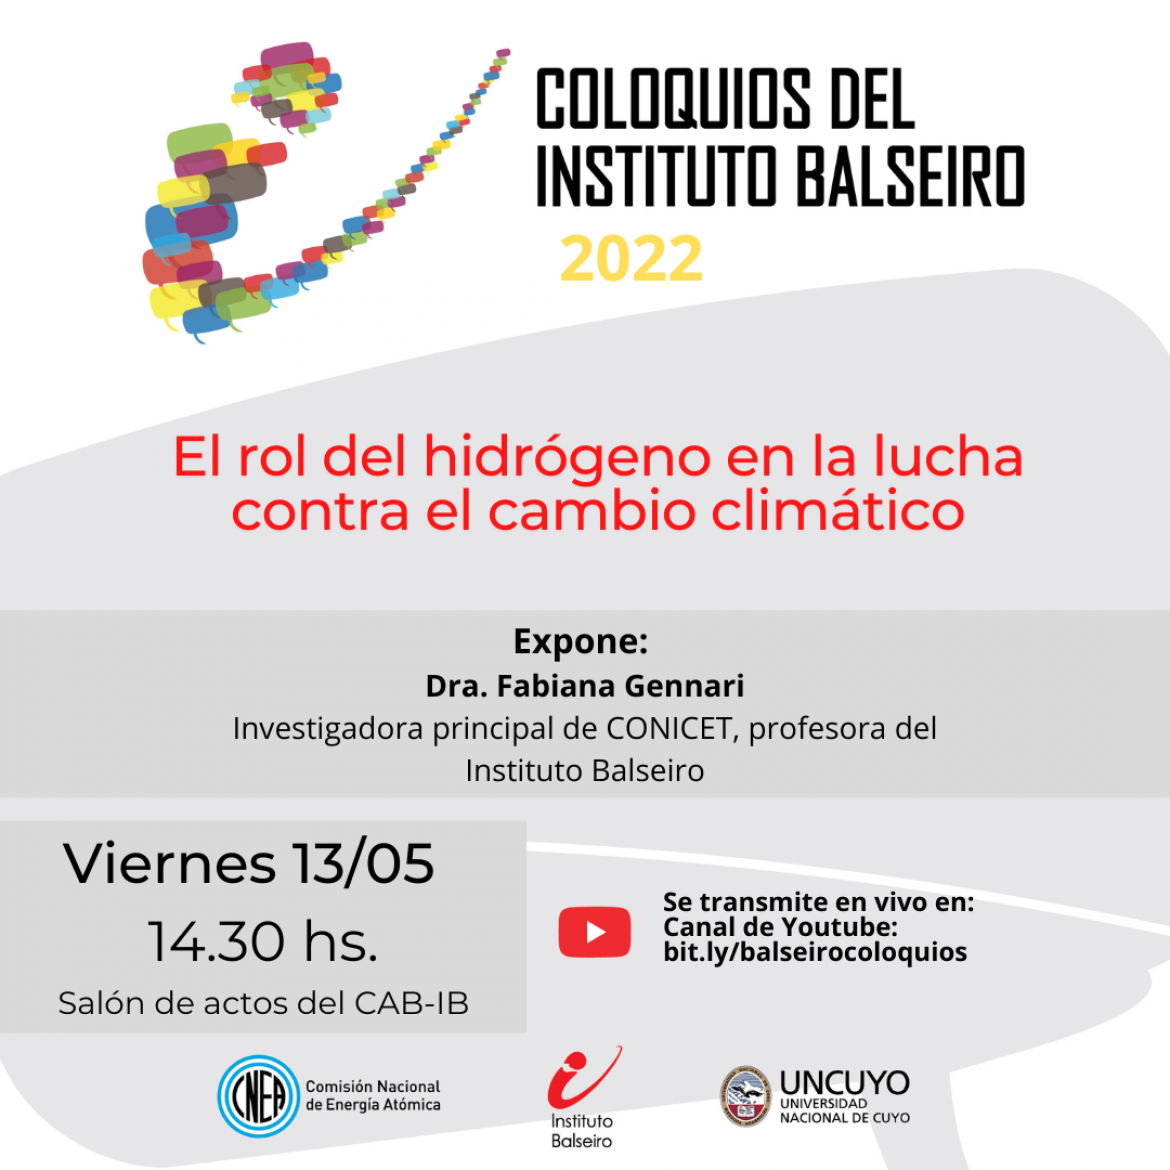 COLOQUIO DEL 13/05: El rol del hidrógeno en la lucha contra el cambio climático